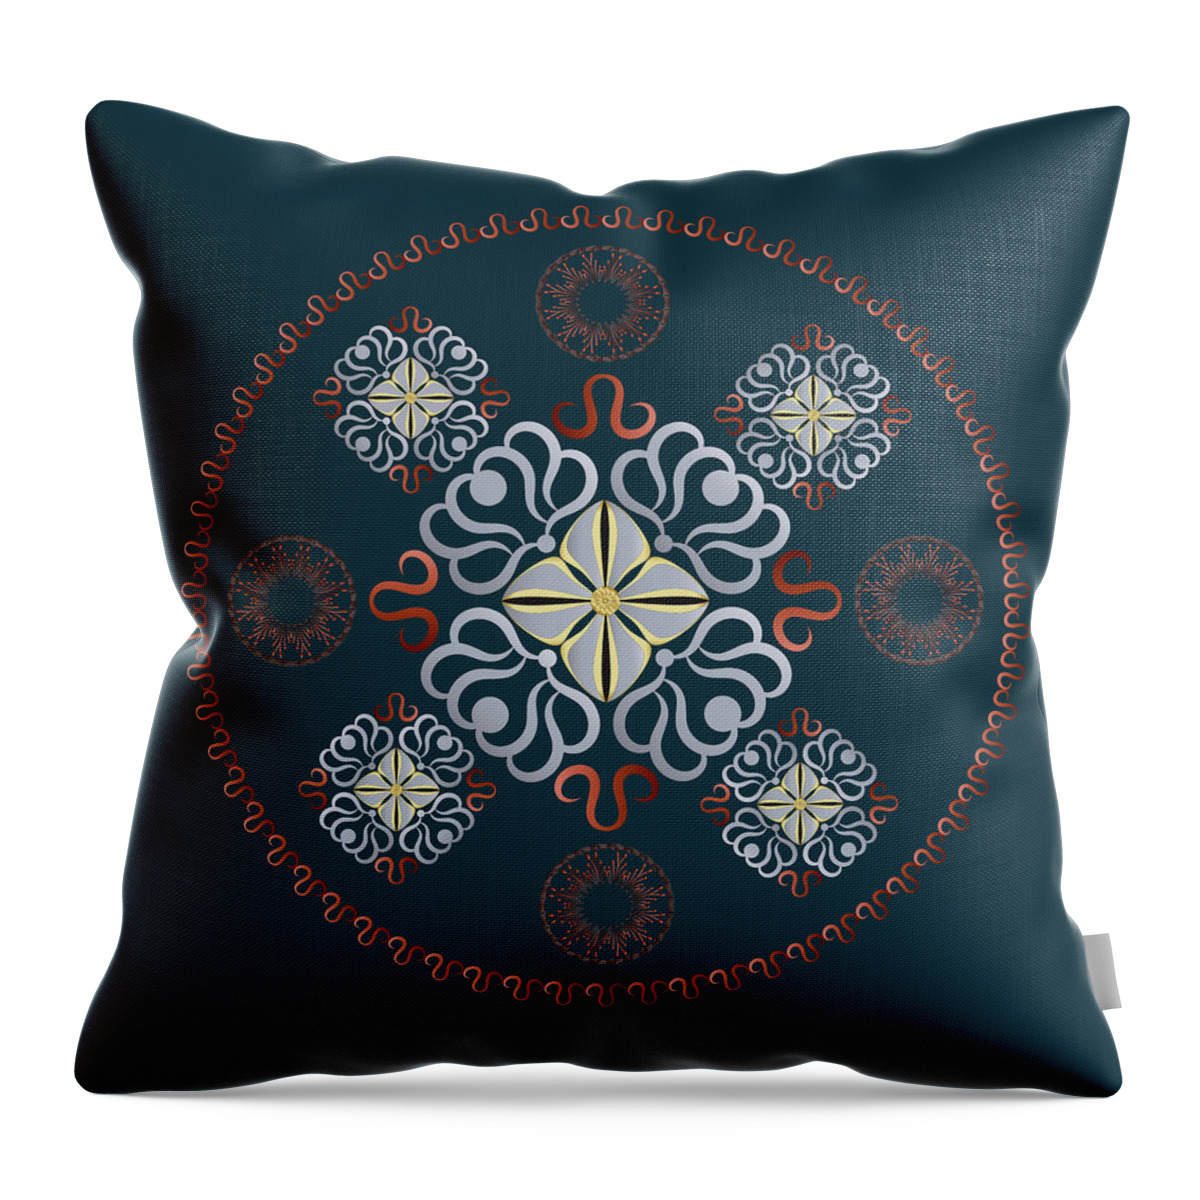 Mandala Throw Pillow featuring the digital art Kuklos No 4312 by Alan Bennington